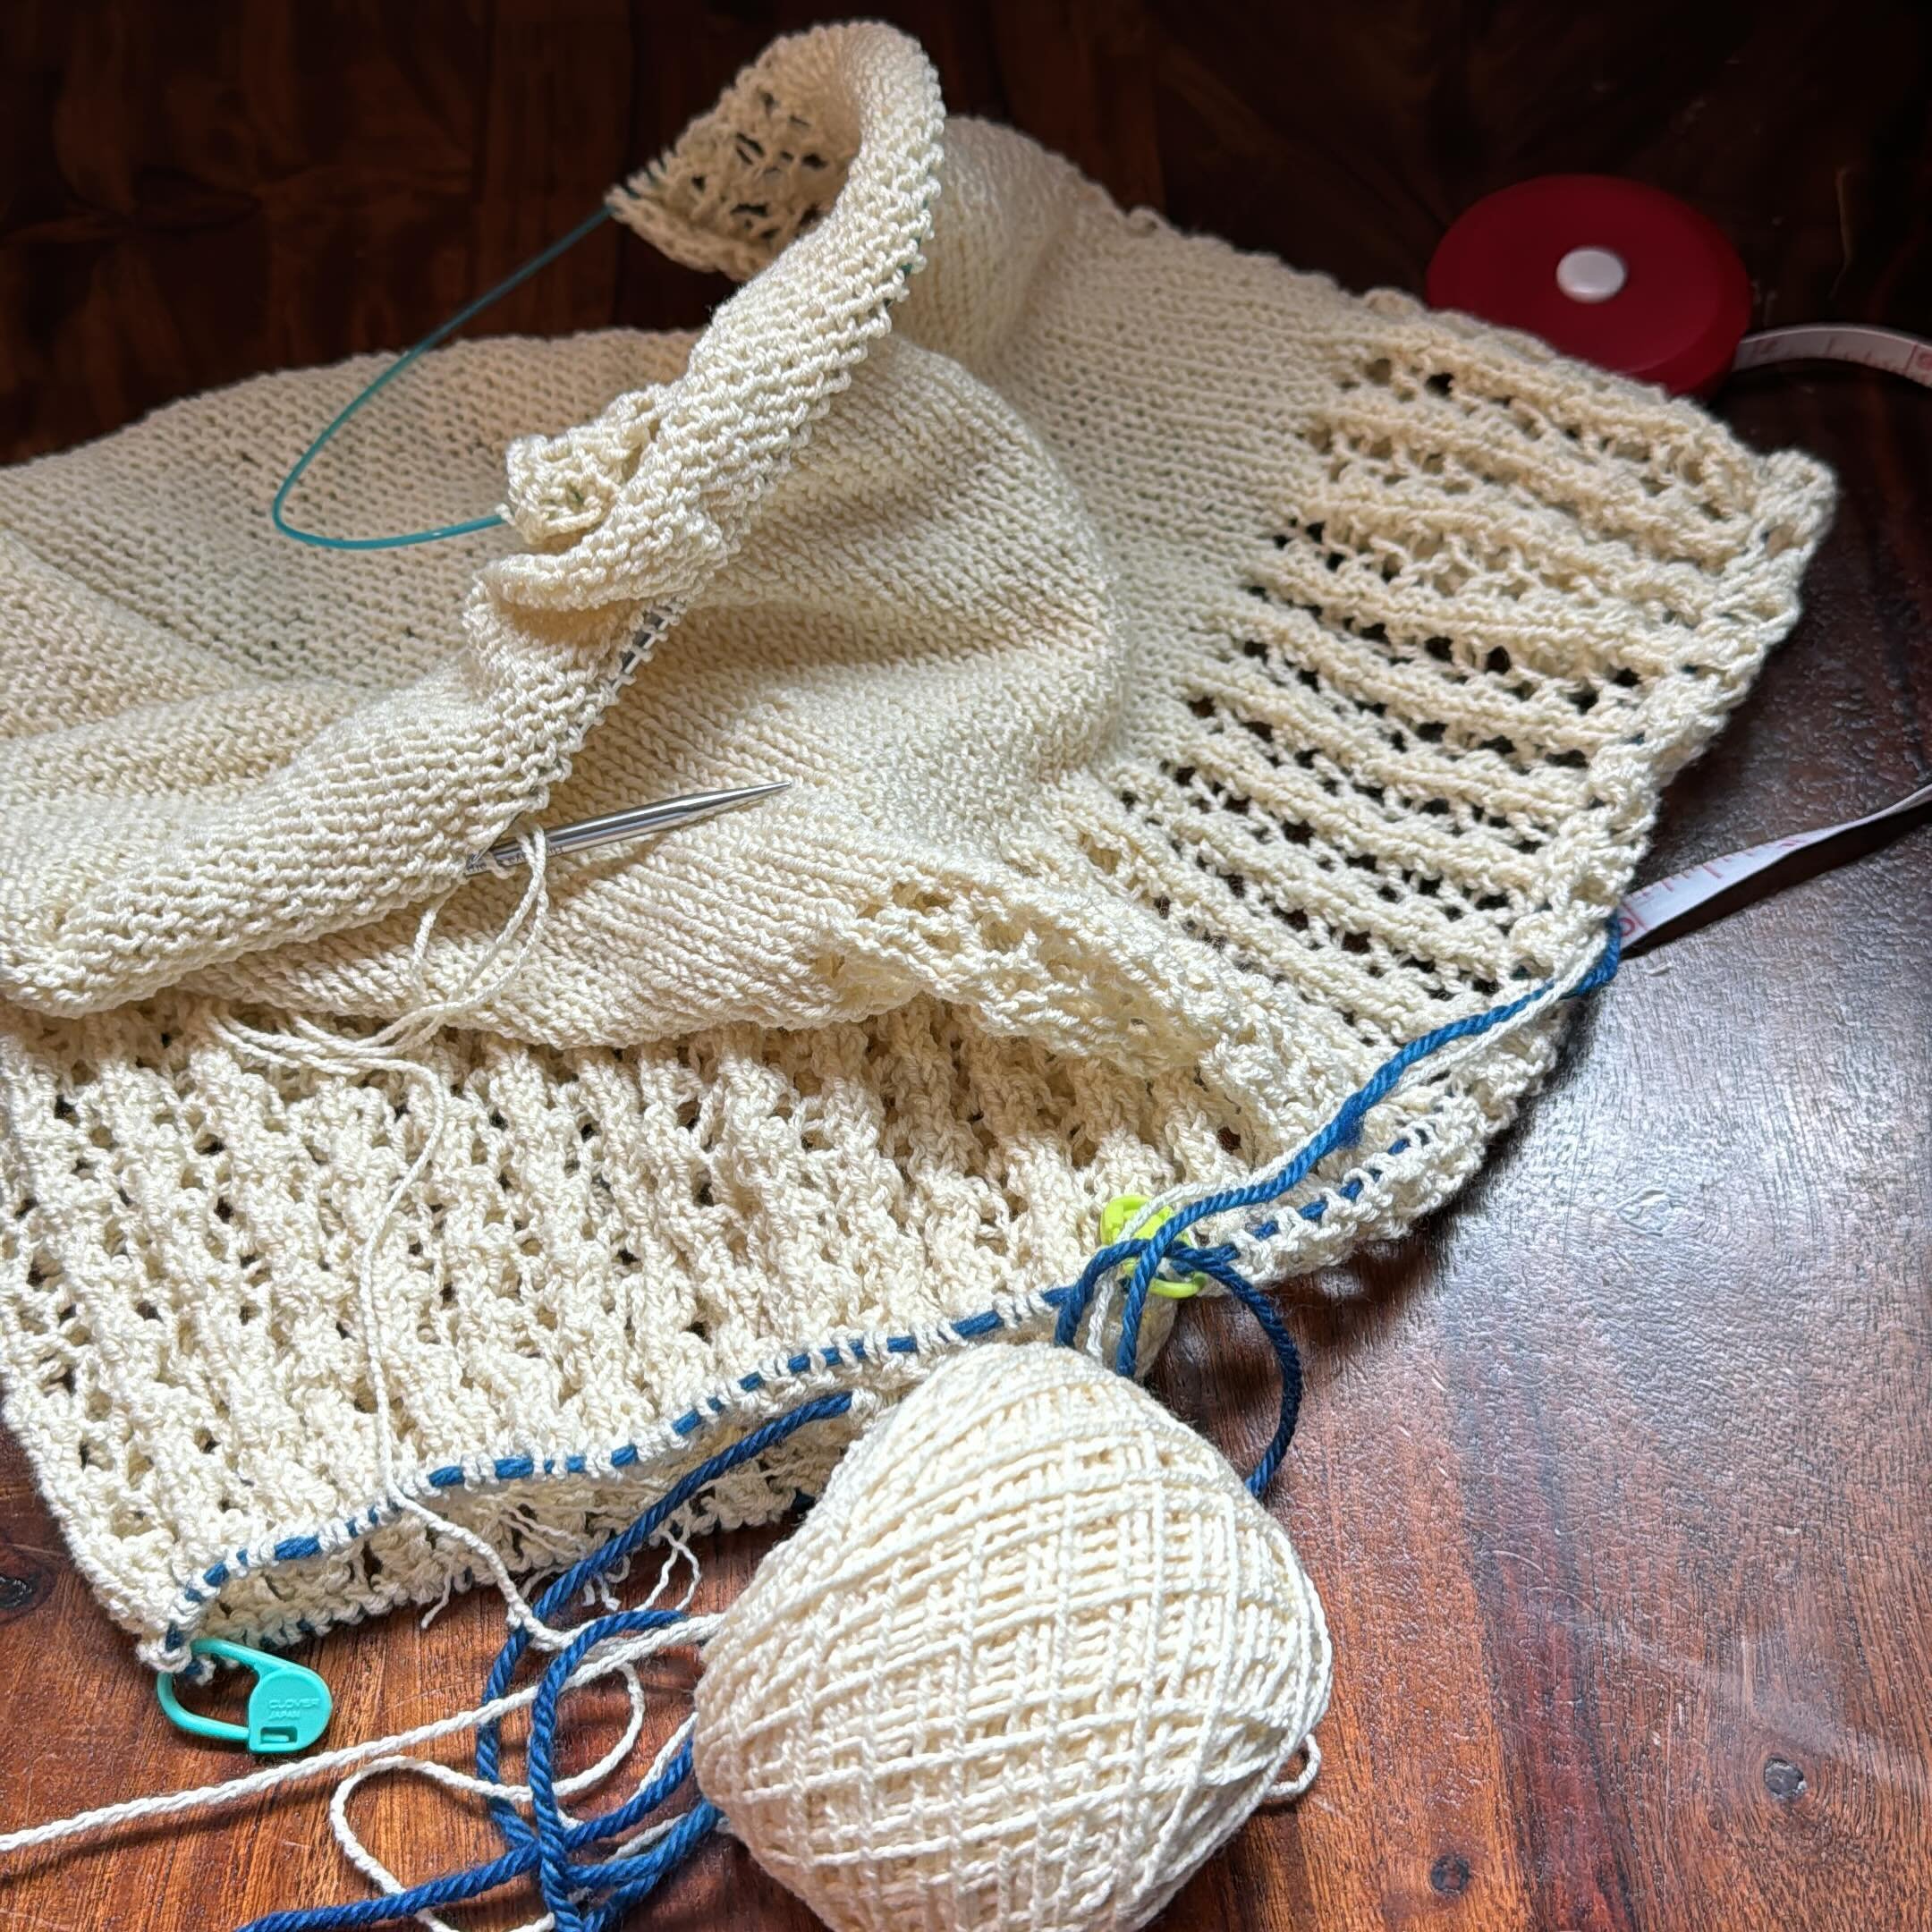 Knitting knitting knitting&hellip; why does 10 inches seem like forever? #knitting #knittersofinstagram #laceknitting #summerknit